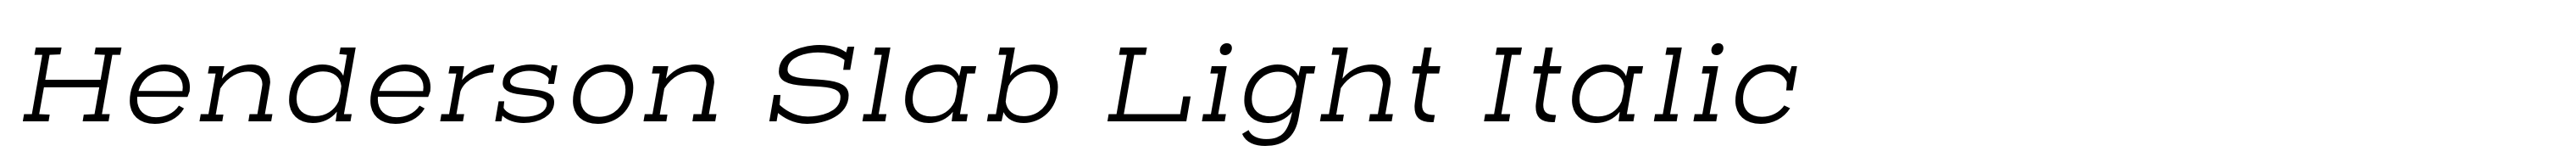 Henderson Slab Light Italic